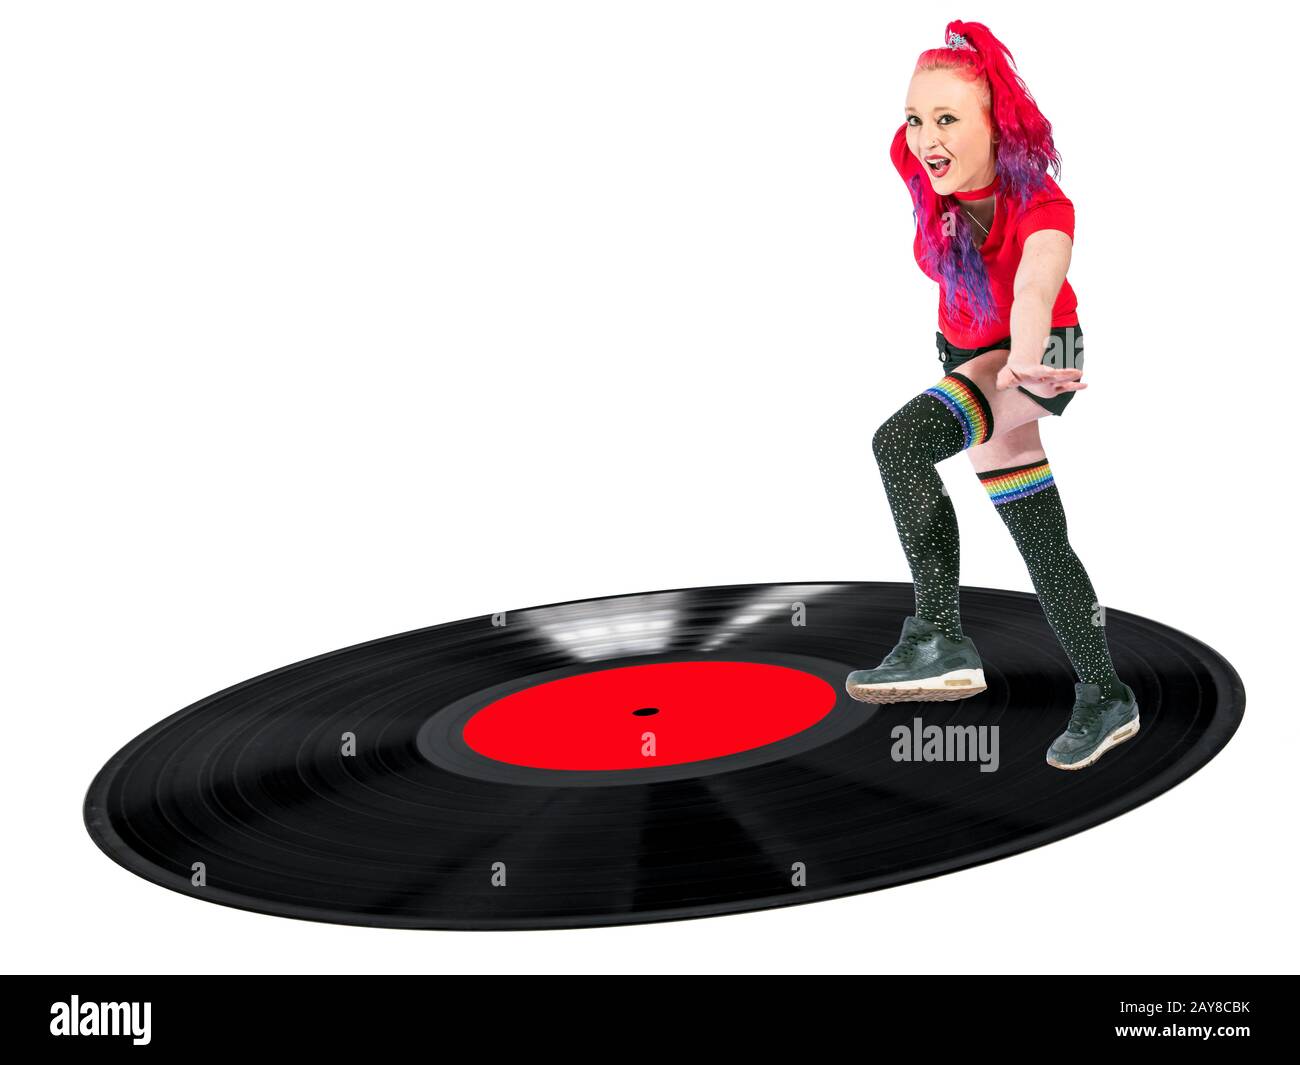 Donna con capelli rossi e gambaletti danzanti su un disco in vinile ridendo Foto Stock